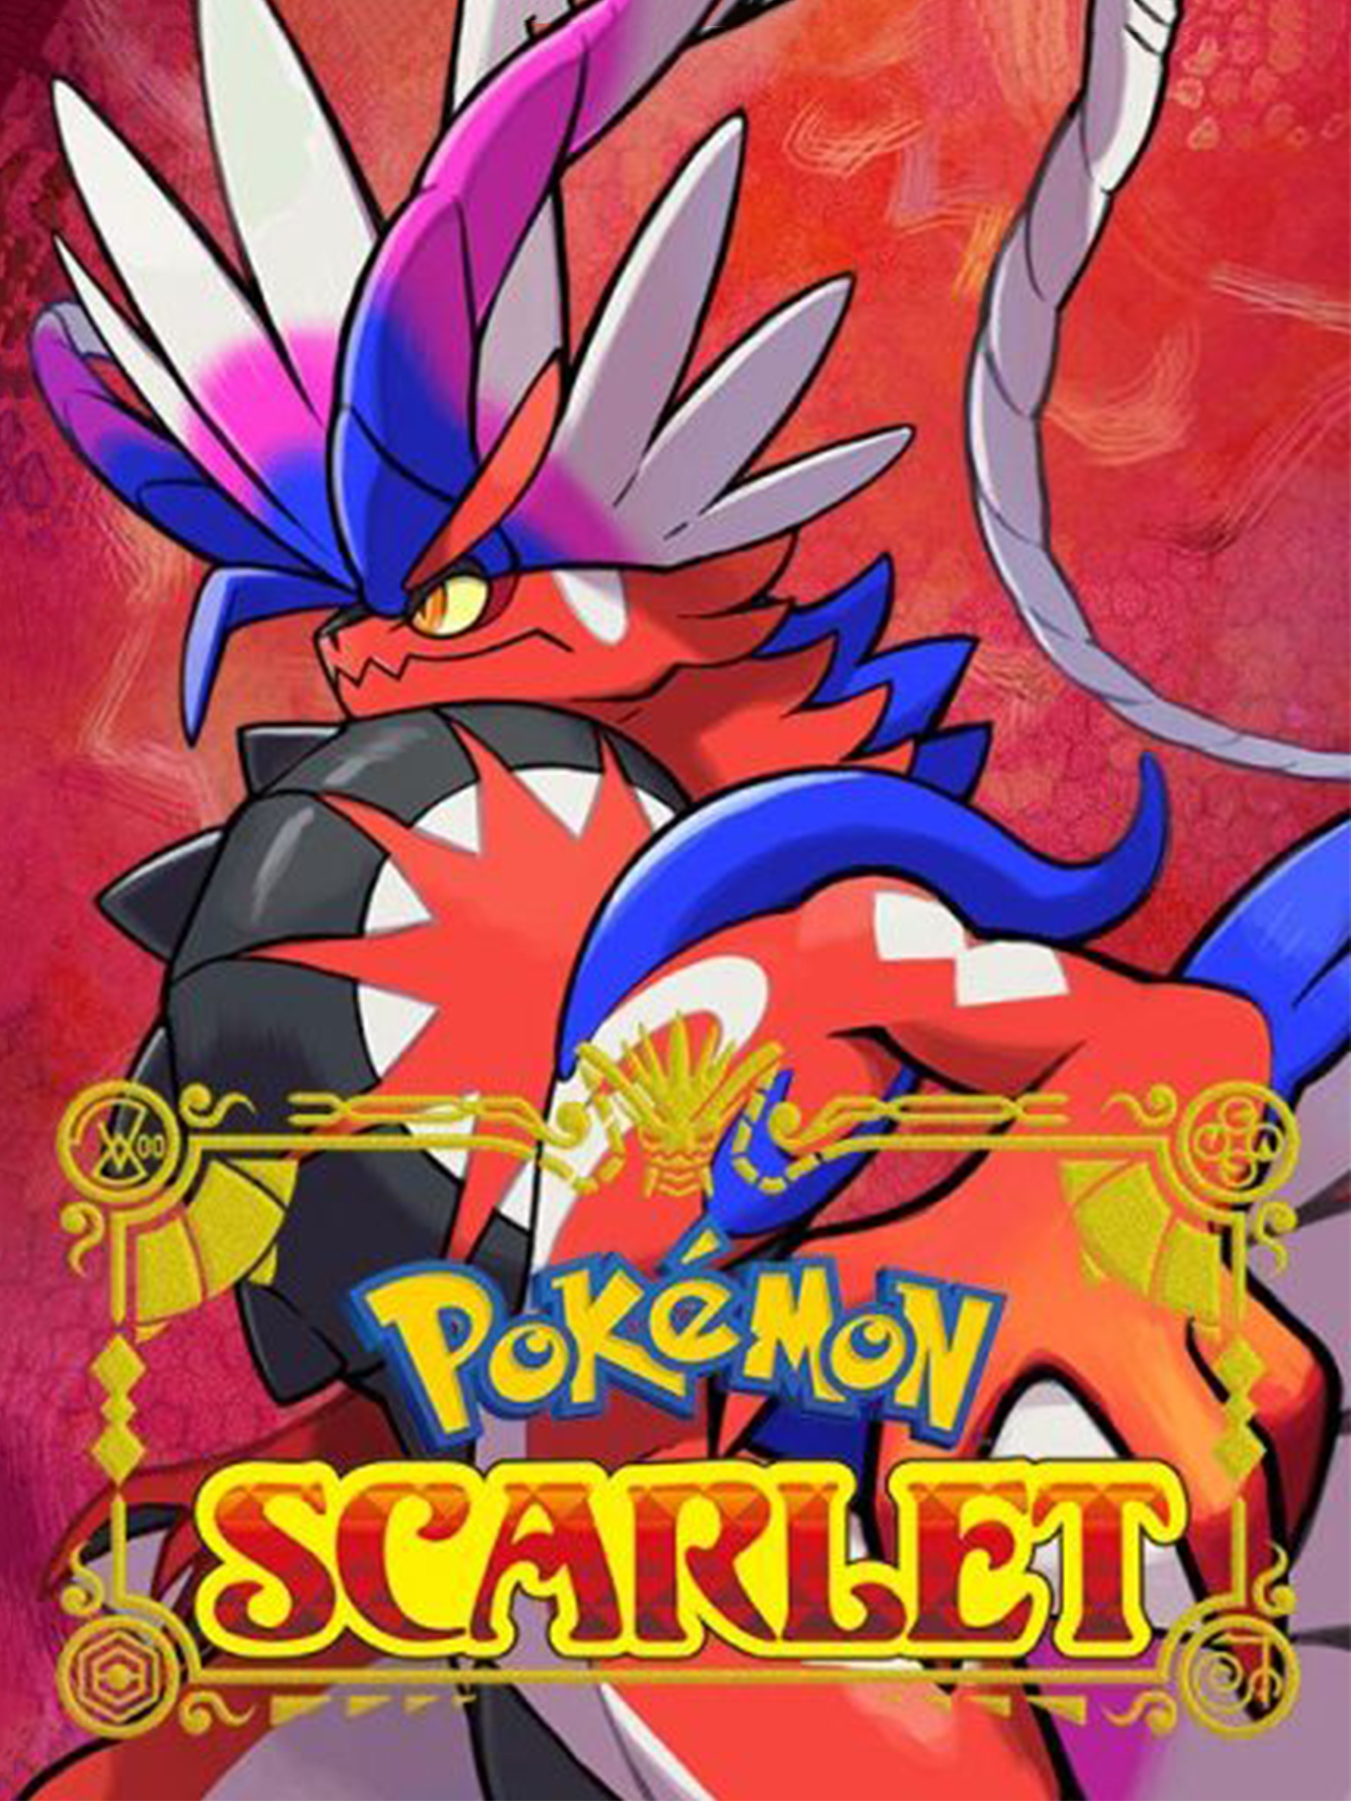 Pokemon Scarlet & Pokemon Violet coming late 2022